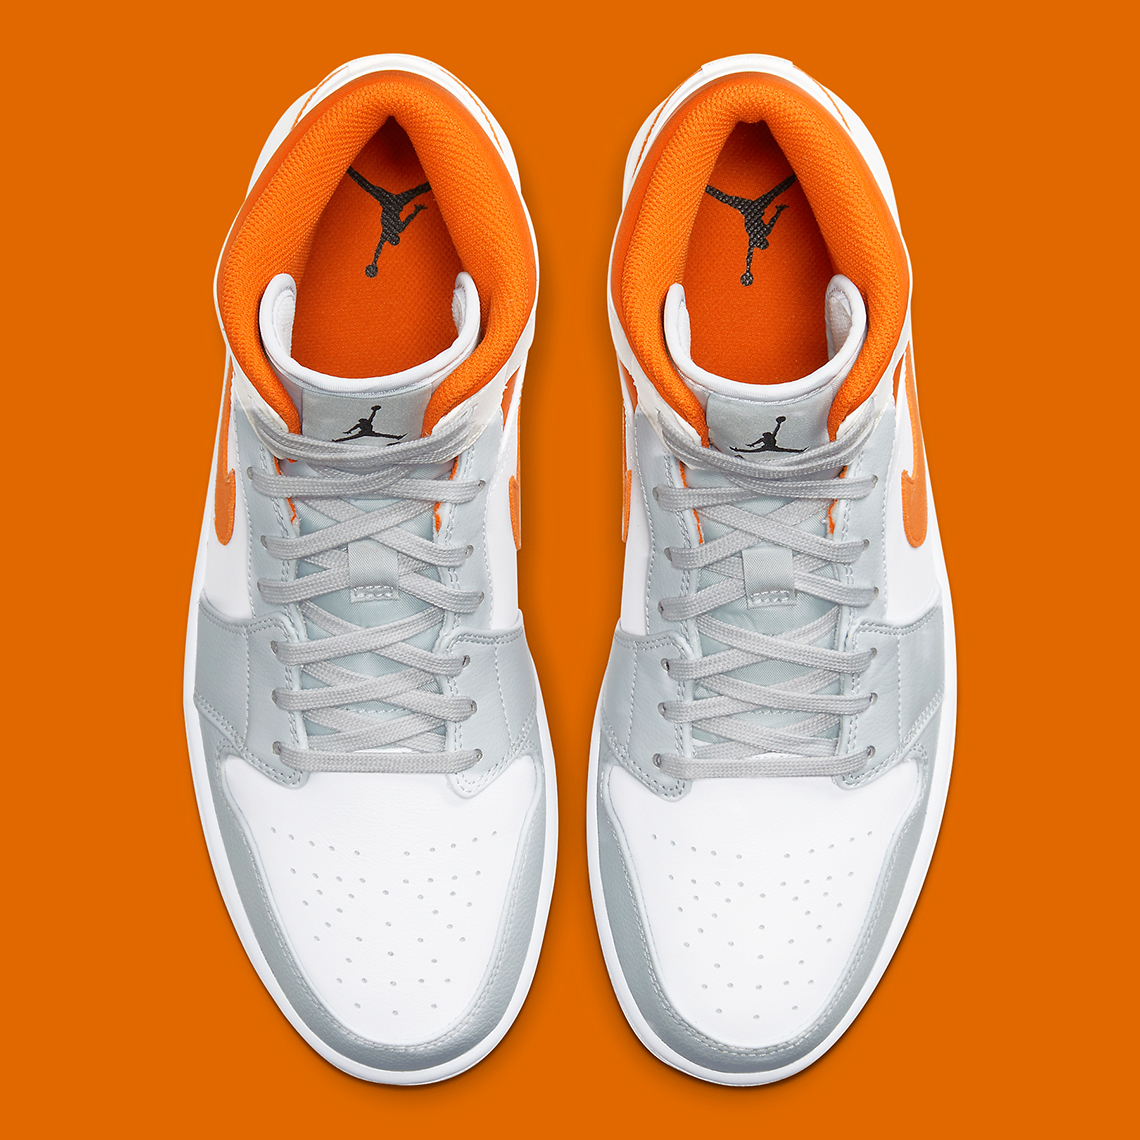 grey orange and white jordans